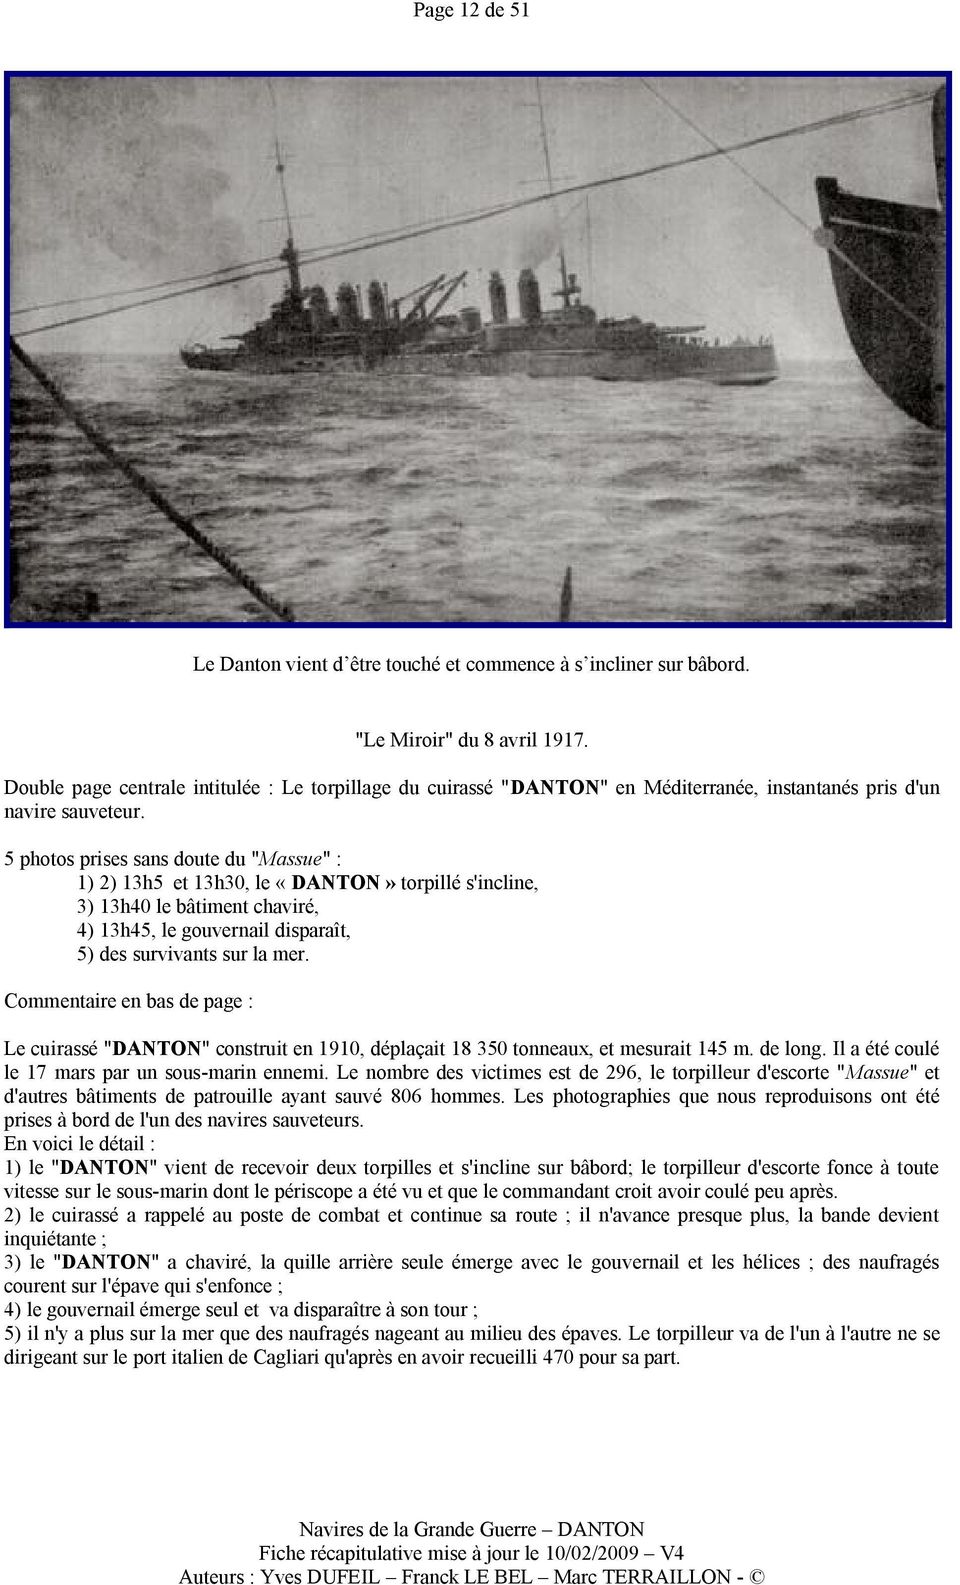 5 photos prises sans doute du "Massue" : 1) 2) 13h5 et 13h30, le «DANTON» torpillé s'incline, 3) 13h40 le bâtiment chaviré, 4) 13h45, le gouvernail disparaît, 5) des survivants sur la mer.